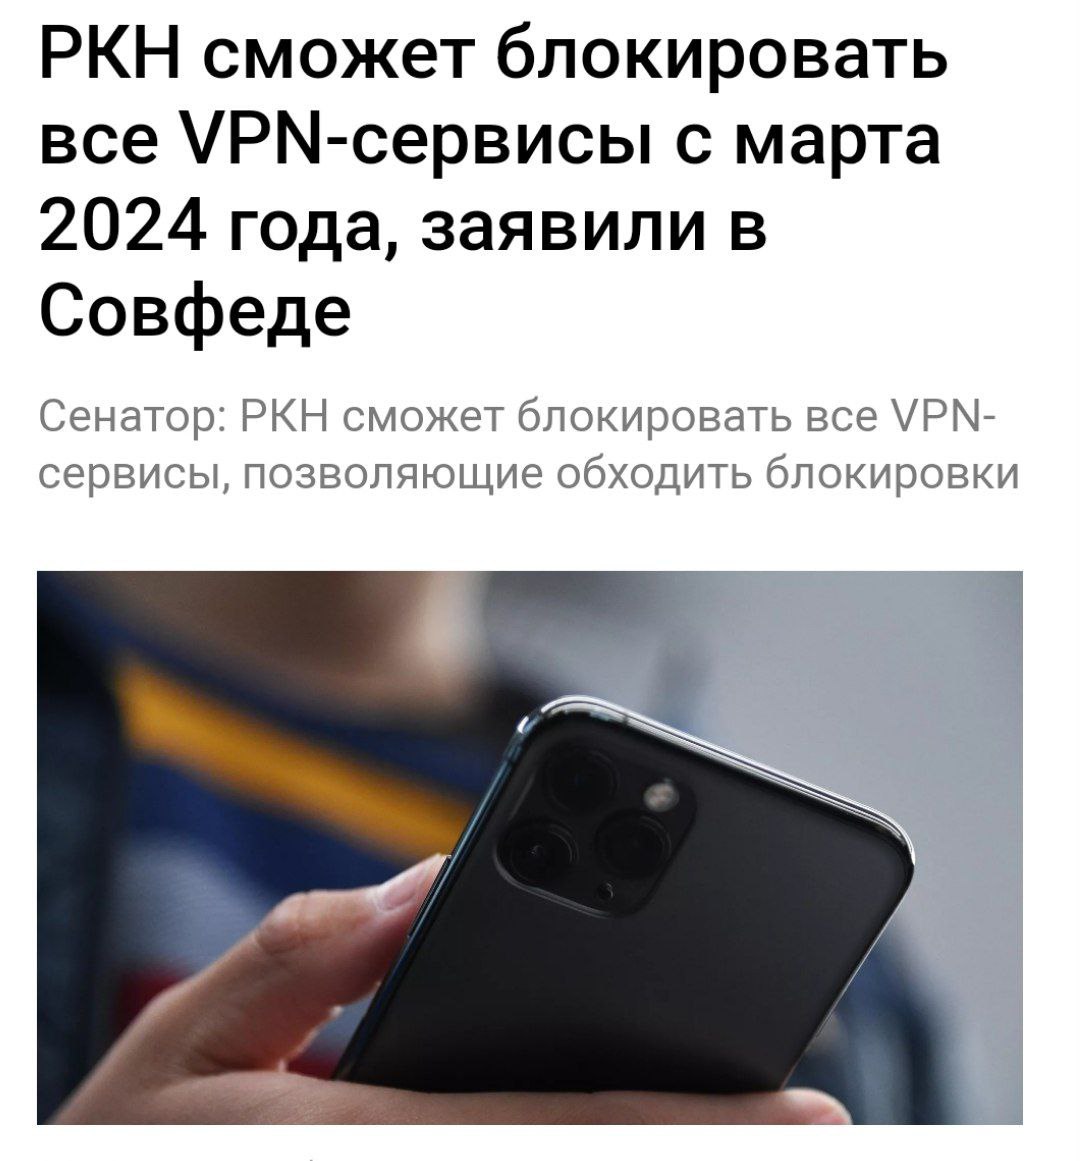 Чебурнет vpn. Впн заблокируют в 2024.